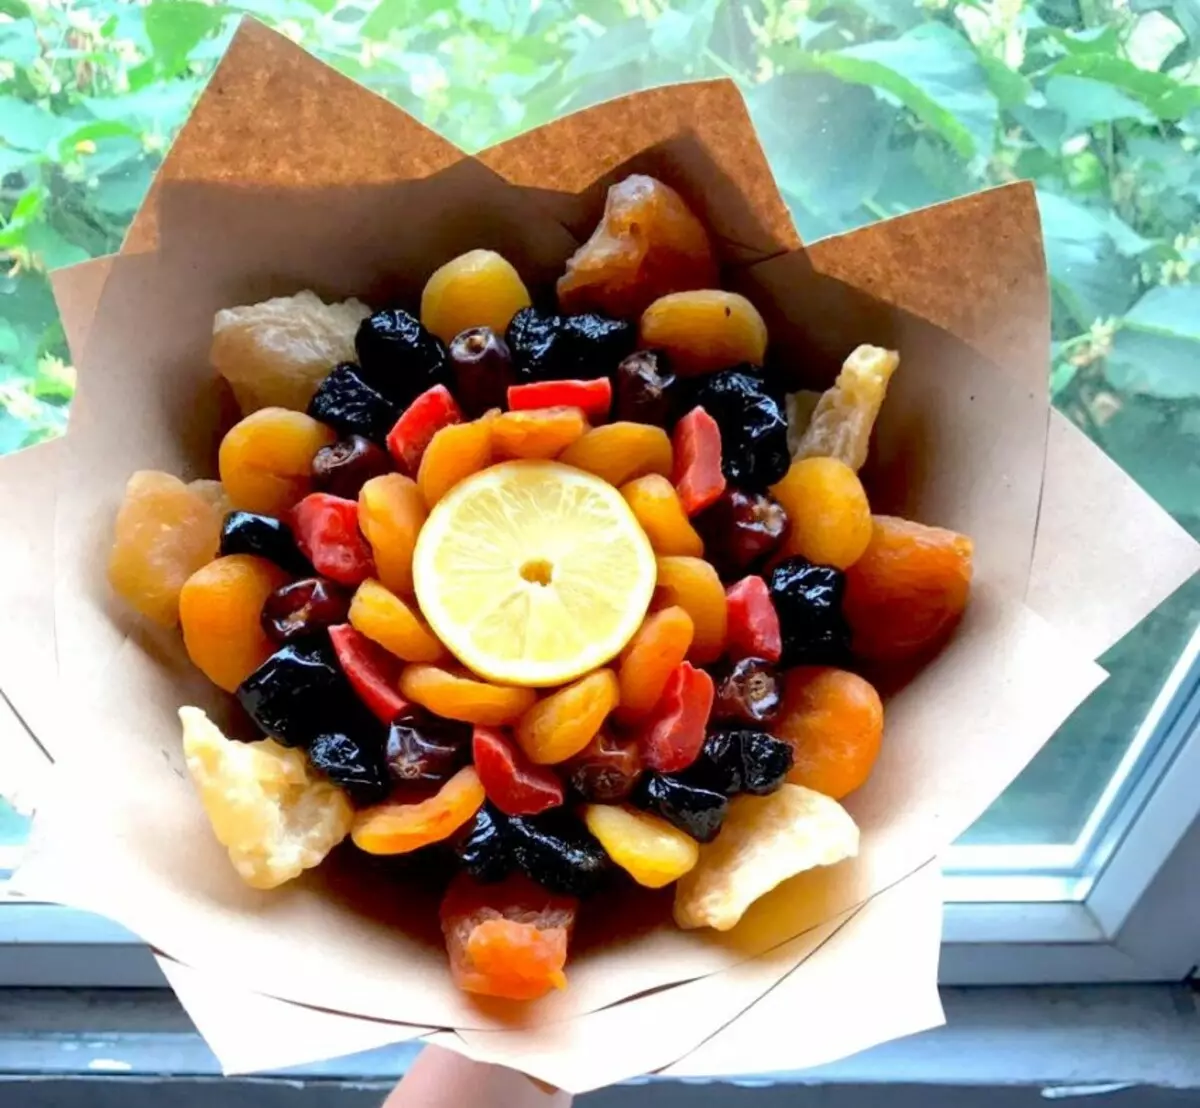 Regalos de frutas secas y nueces: Cómo empacar bien un conjunto de frutos secos y nueces? Cómo ponerlas en un plato muy bien? 7682_12